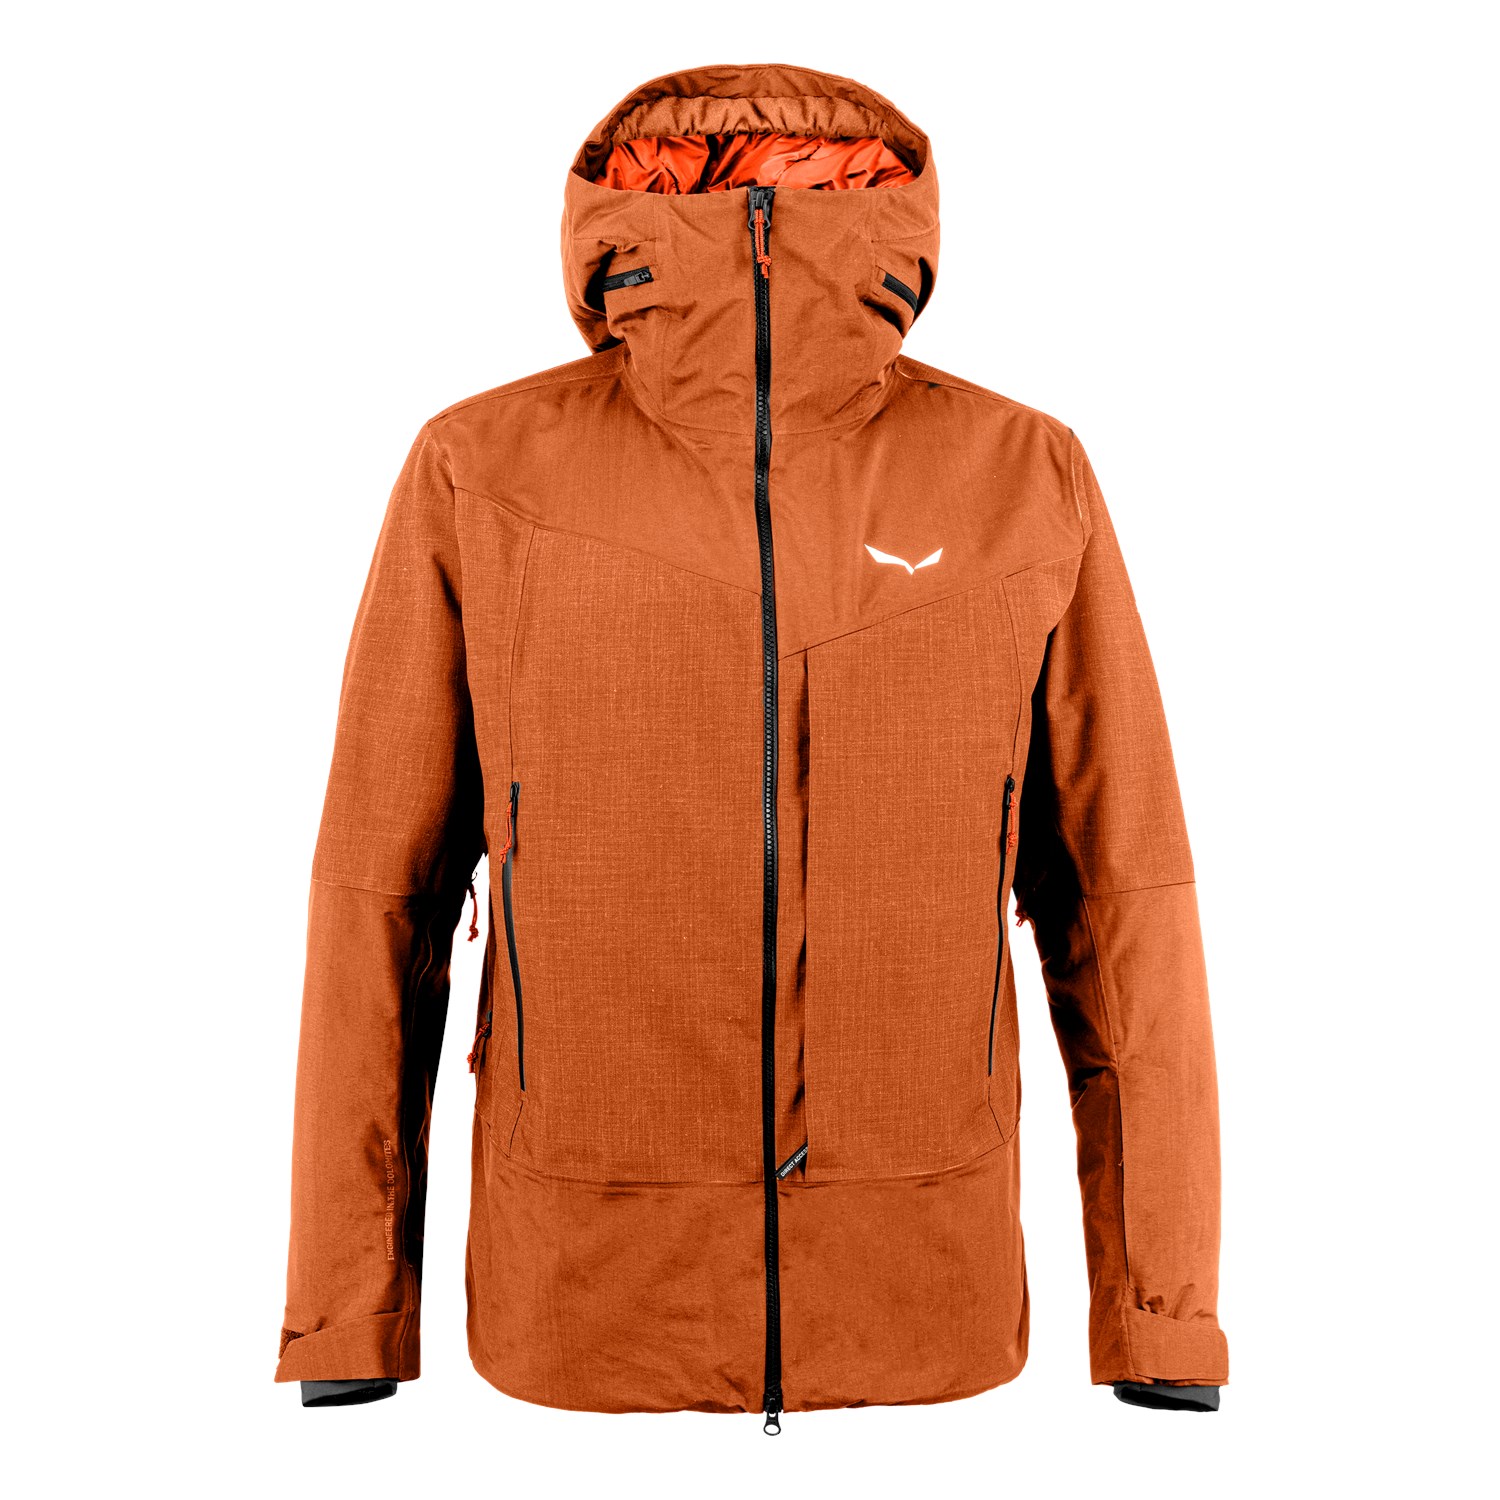 Homme Moufles de ski rembourrées - Orange